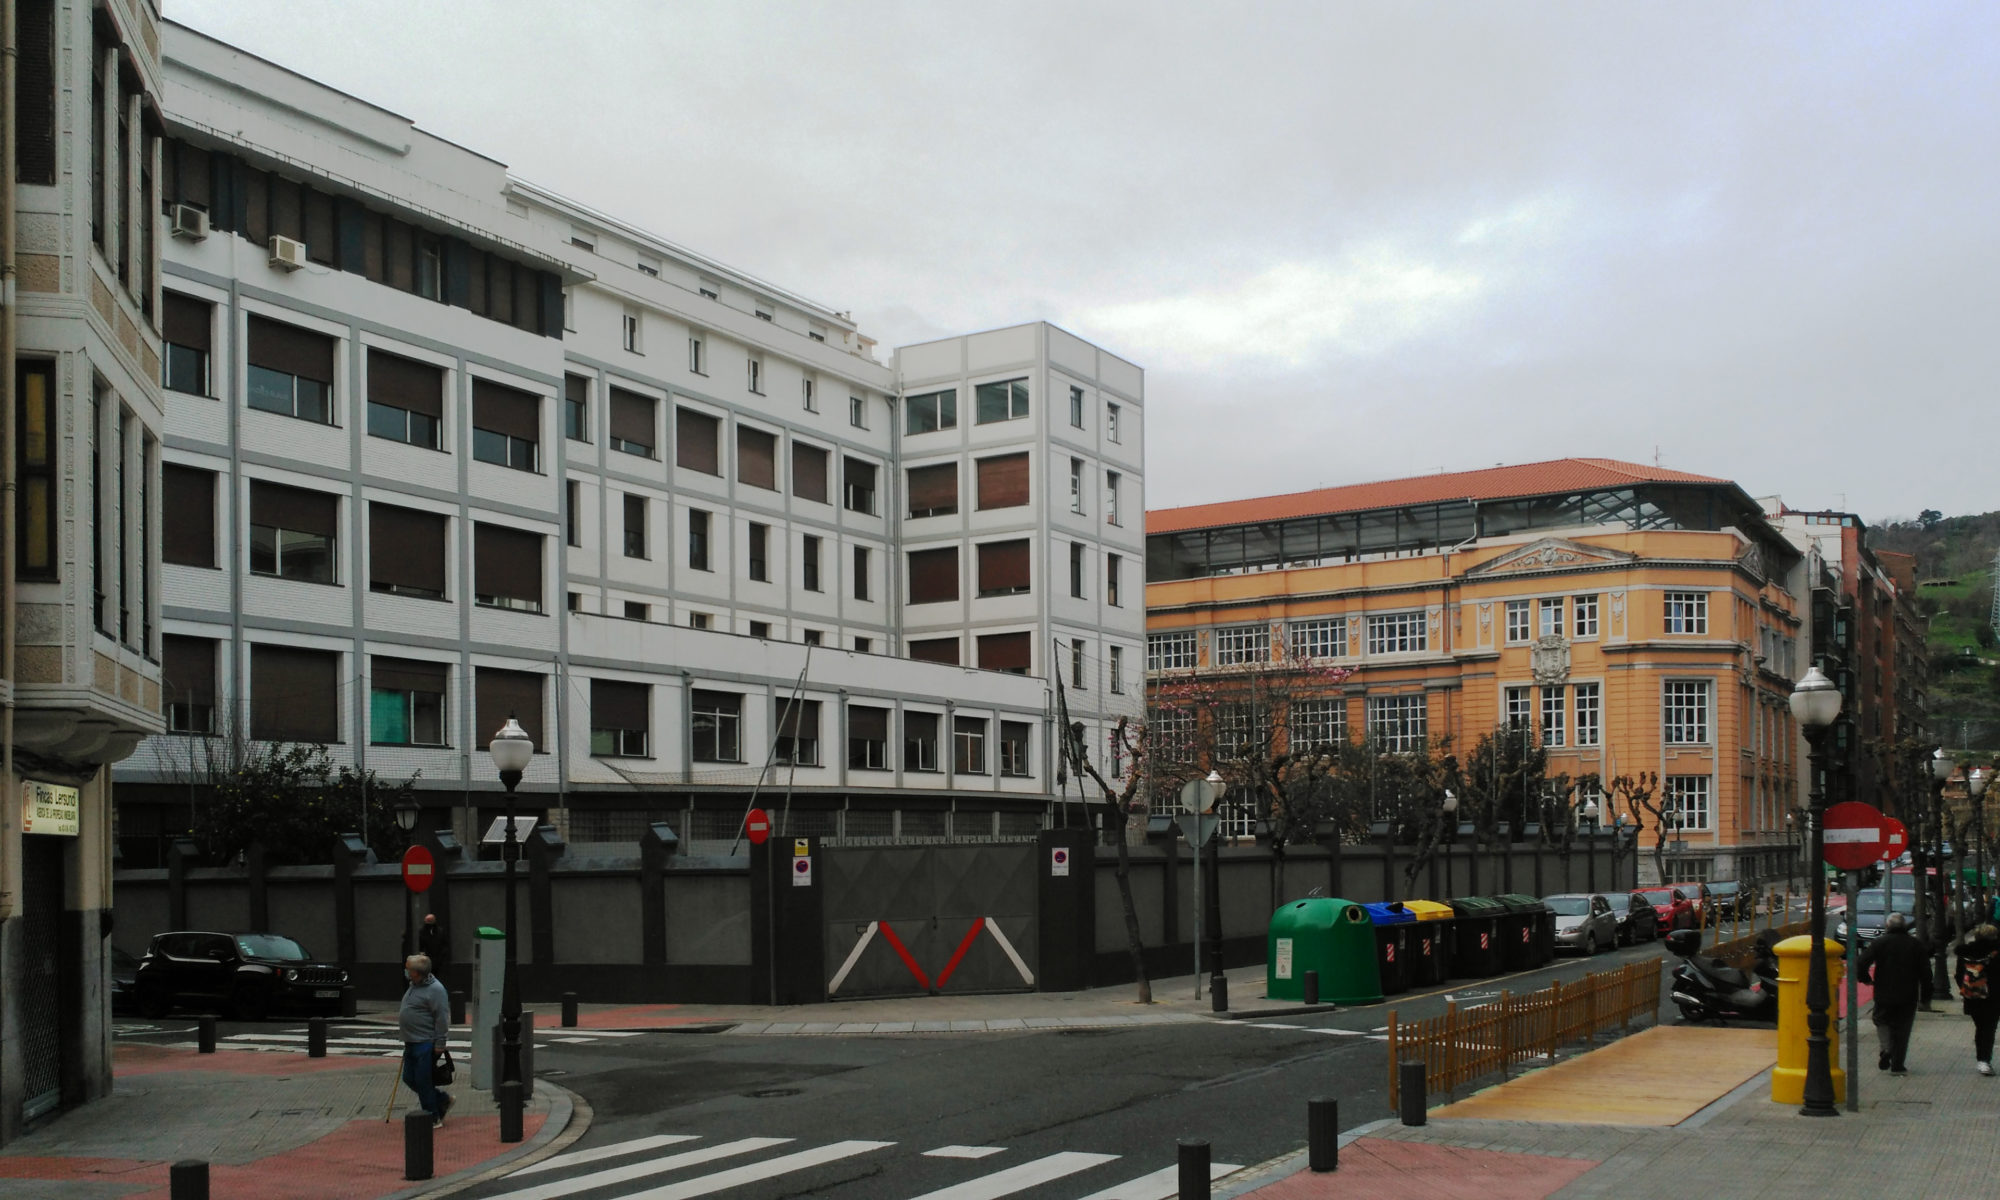 En primer plano el edificio recientemente renovado de la escuela de magisterio BAM que el obispado de Bilbao quiere demoler, al fondo el colegio público Cervantes.